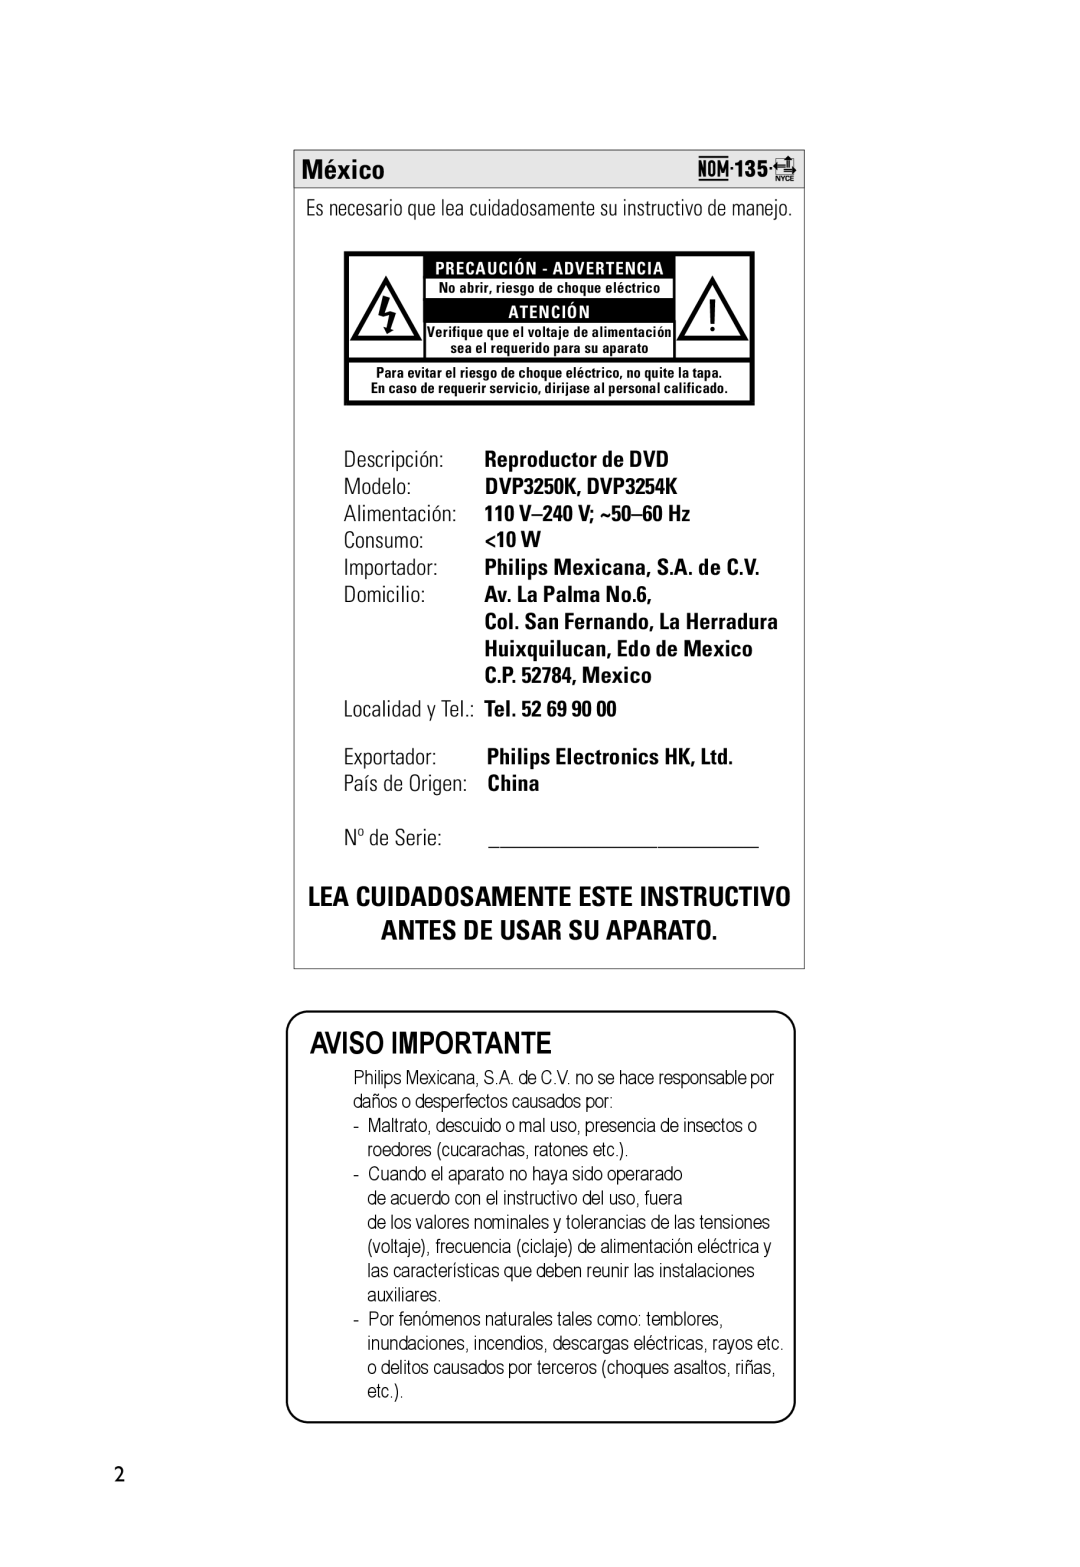 Philips DVP3254K Aviso Importante, México, Lea Cuidadosamente Este Instructivo Antes De Usar Su Aparato, Descripción, 10 W 